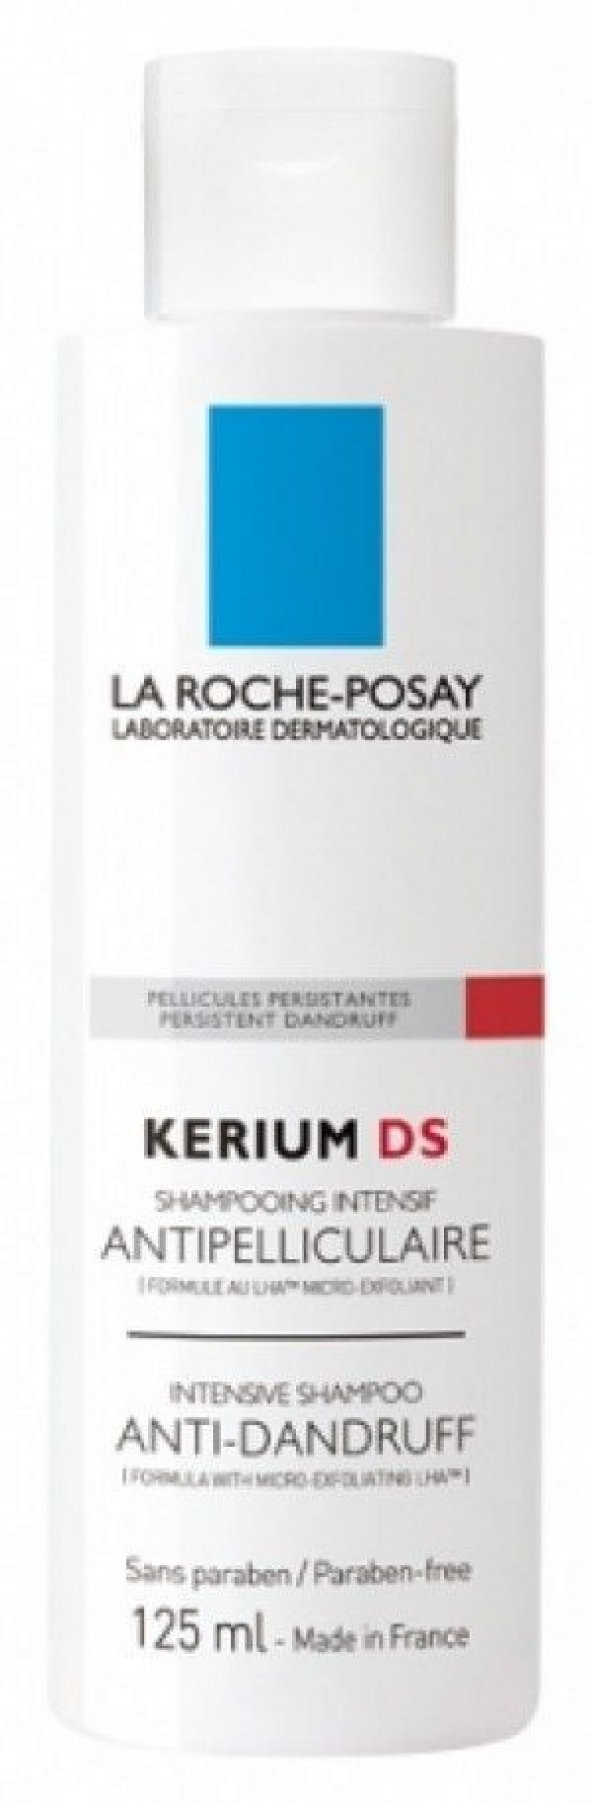 La Roche-Posay Kerium DS 125 ml